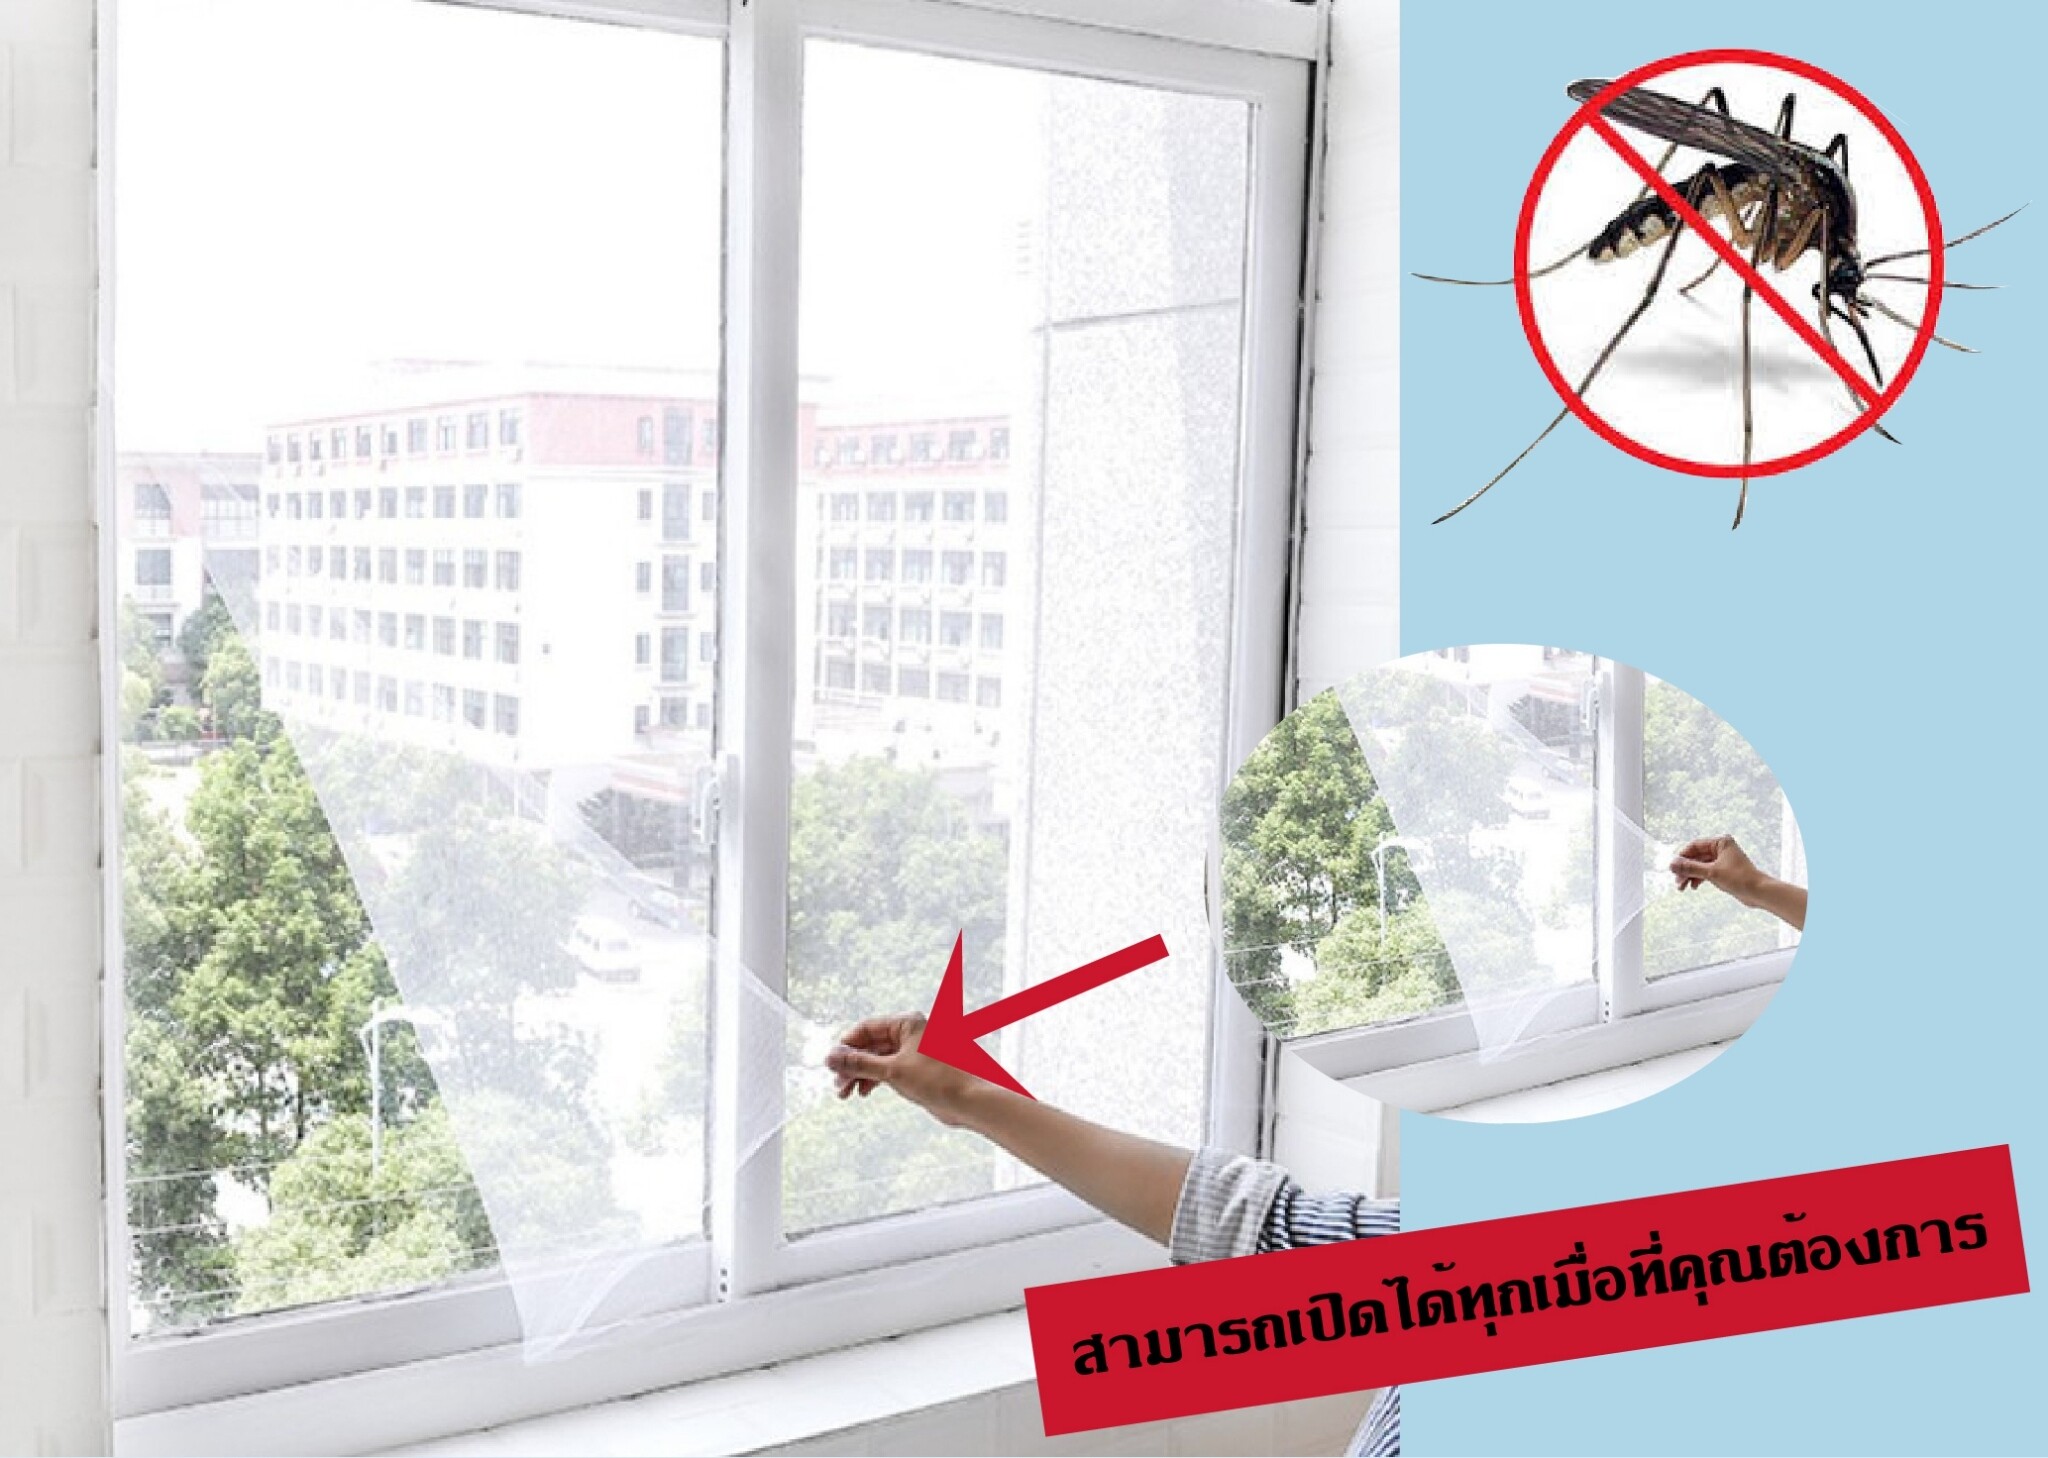 มุ้งตาข่าย ม่านตาข่าย ป้องกันยุงและแมลง  ม่านติดหน้าต่างกันยุง #ID-0015